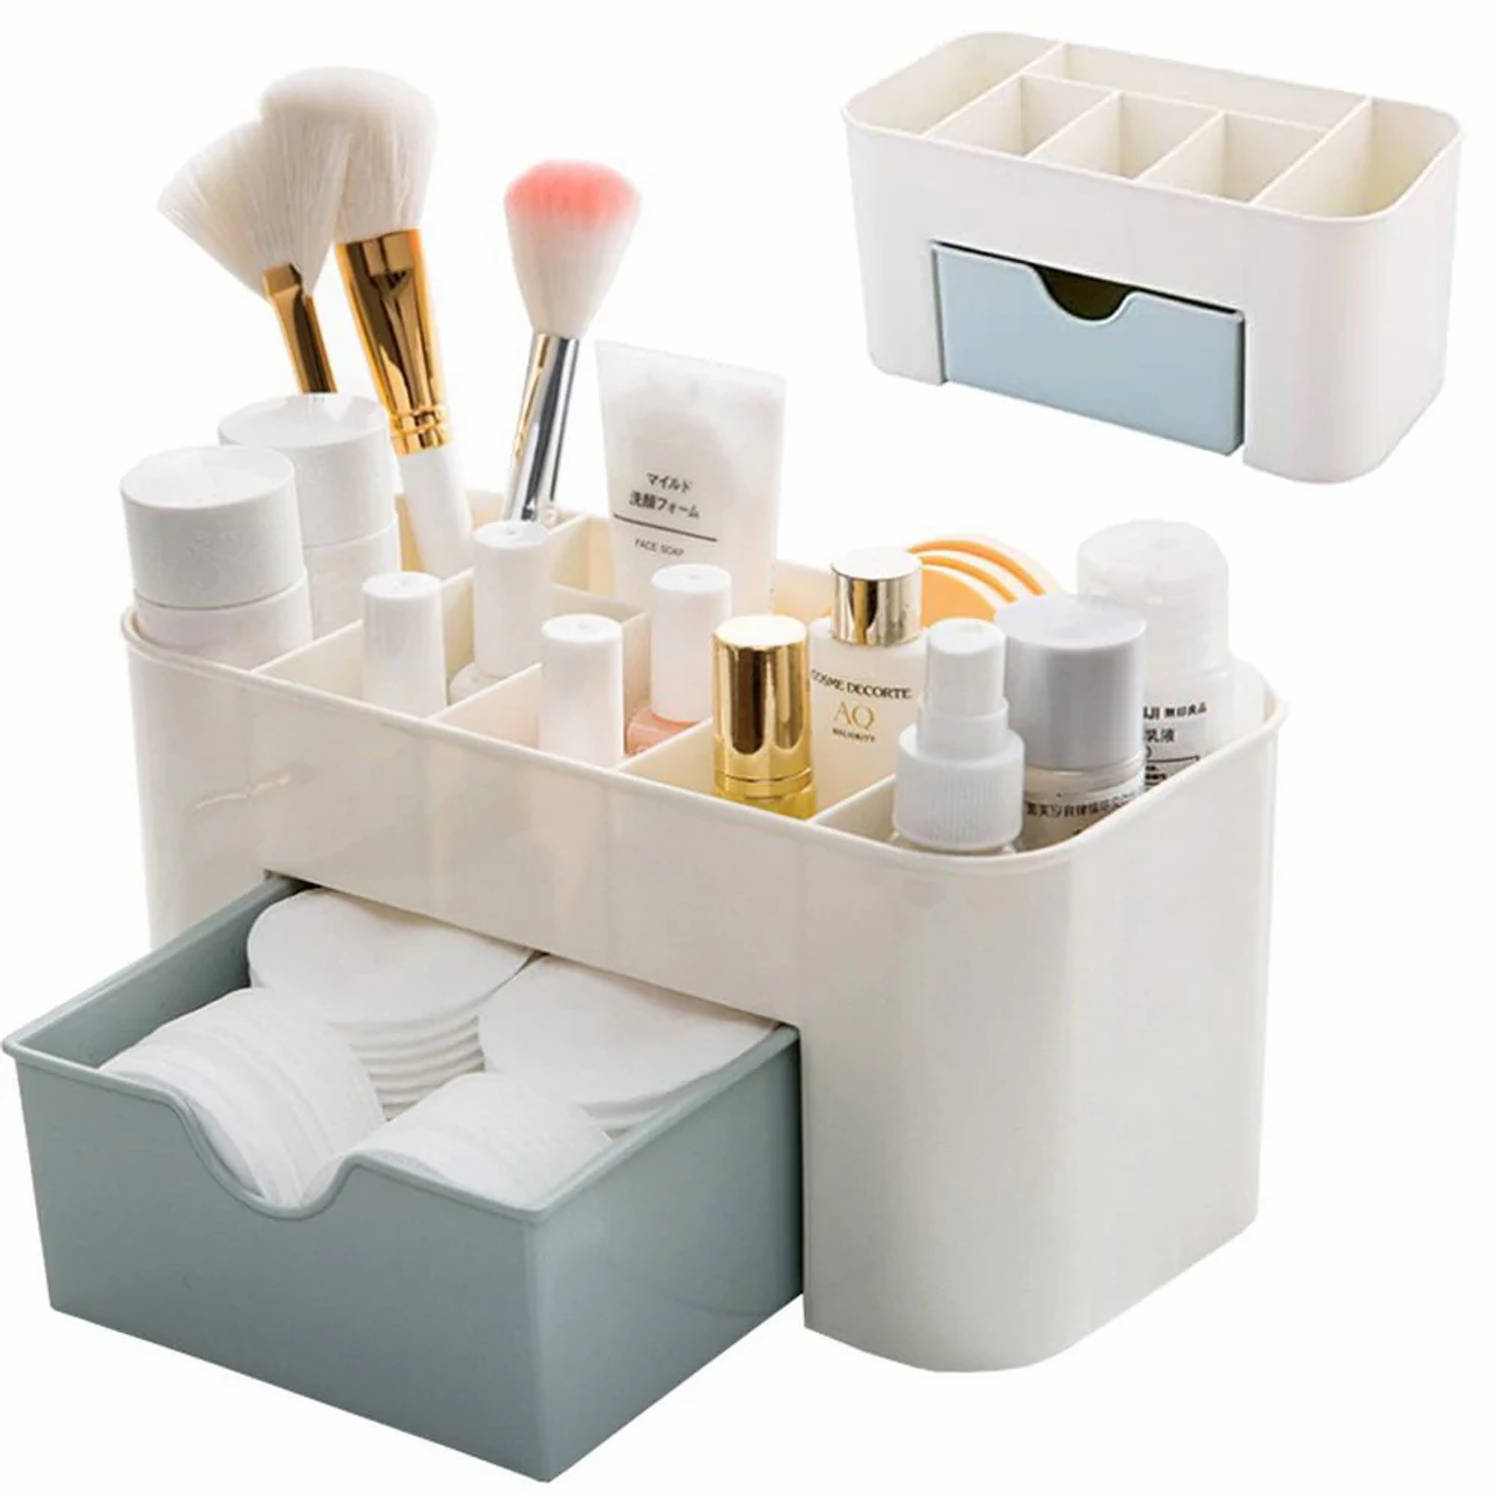 Make-up cosmetica organizer opbergdoos 6 sorteervakken inclusief lade 21 x 11 x 9.5 cm crème - Kleur Grijs Blauw